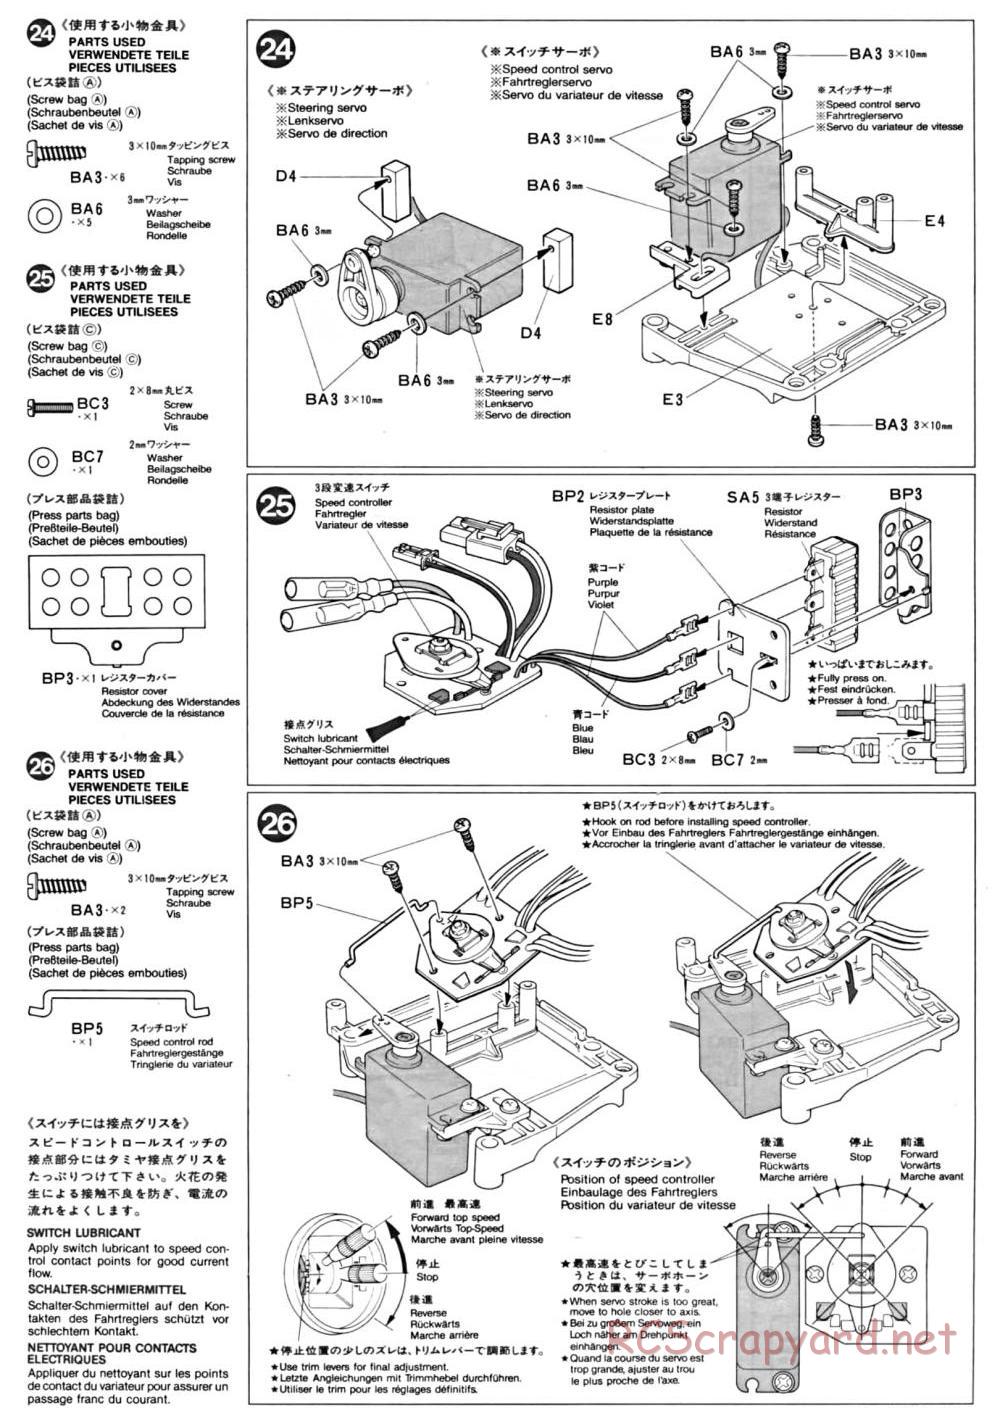 Tamiya - TA-01 Chassis - Manual - Page 9